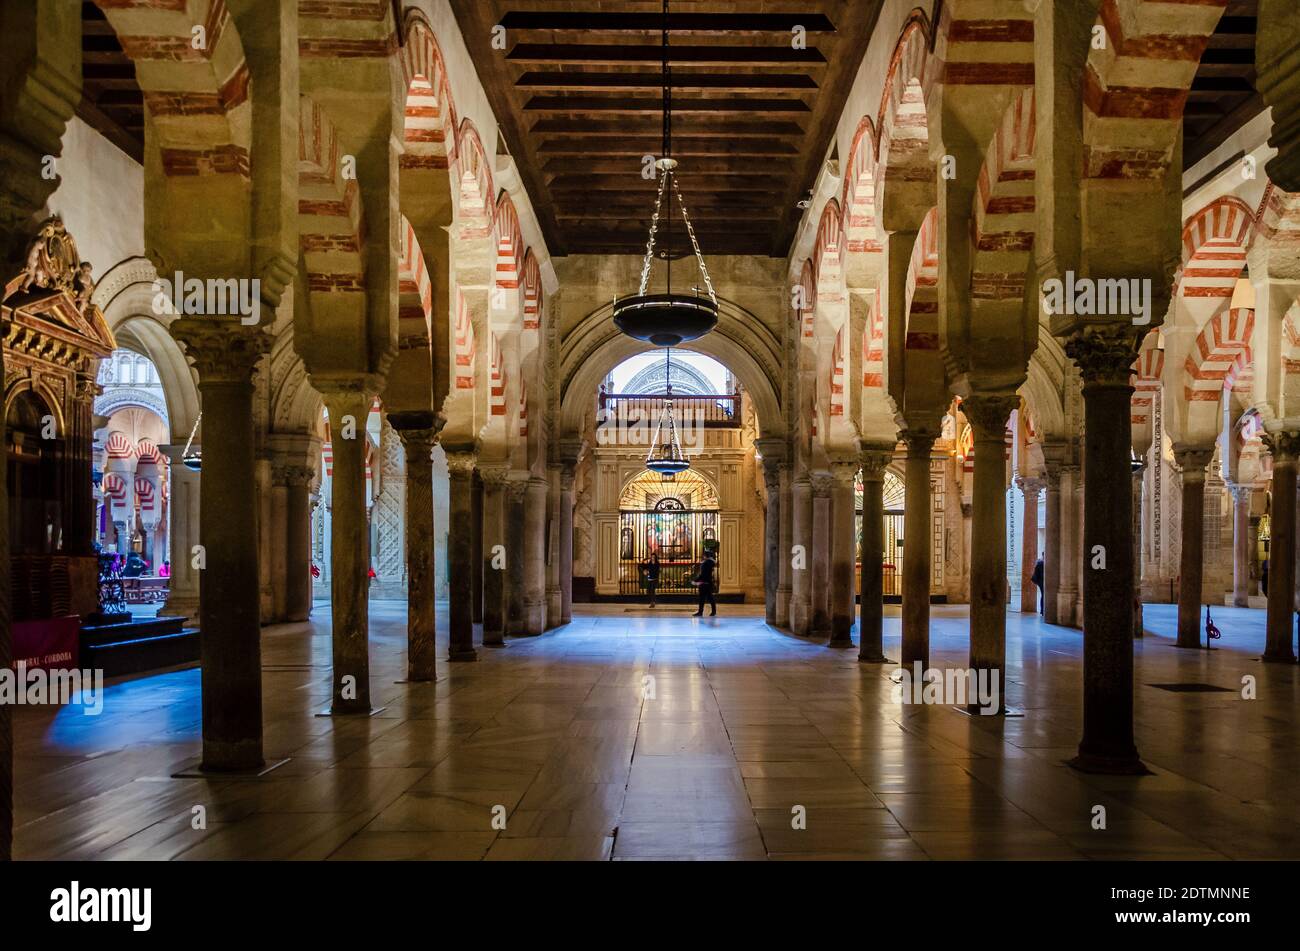 Innenraum der Moschee – Kathedrale von Córdoba. Stockfoto